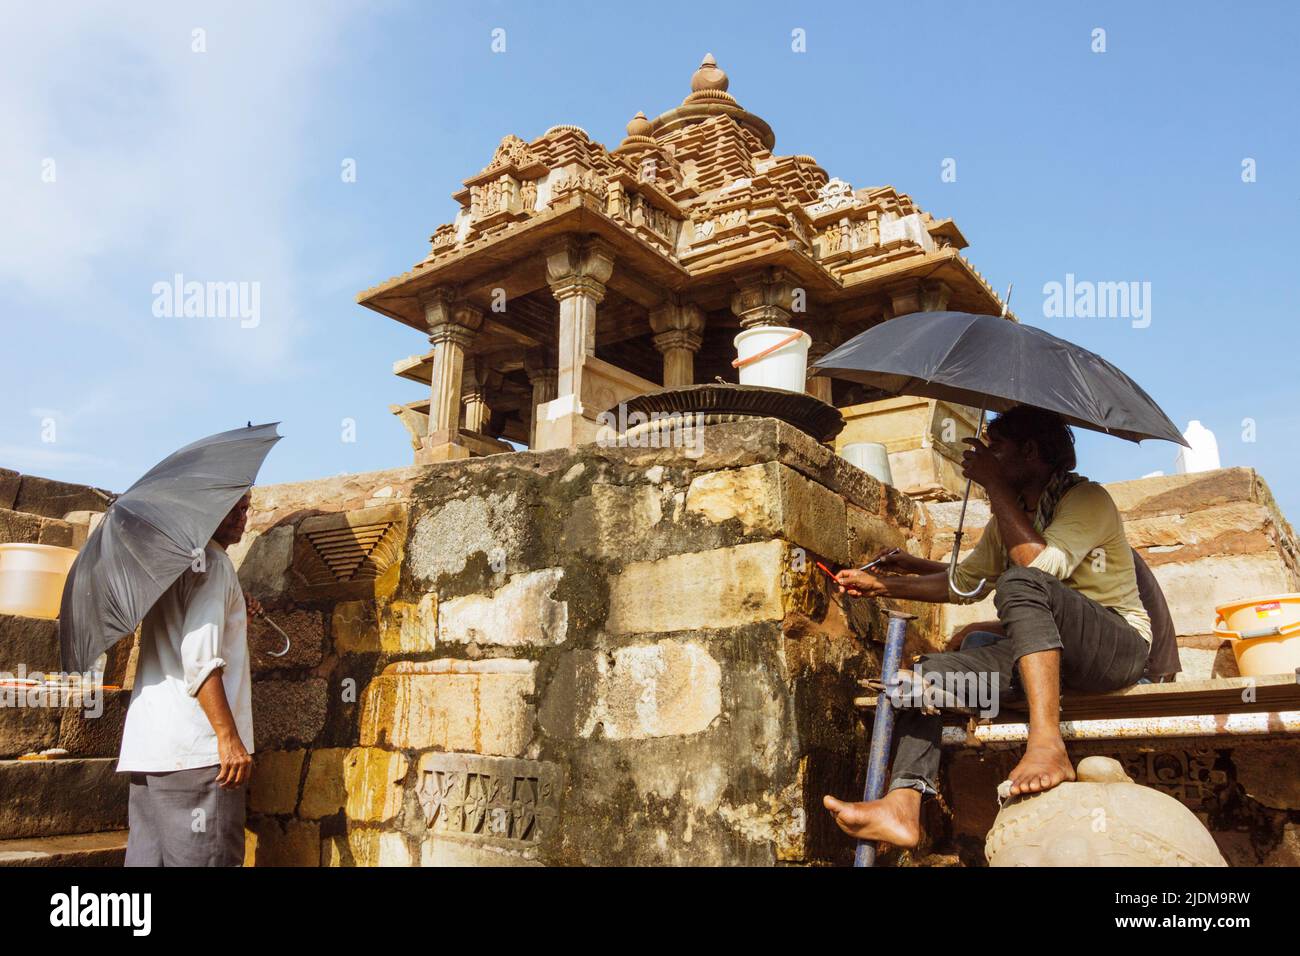 Khajuraho, Madhya Pradesh, India : Dos hombres que sostienen paraguas trabajan para restaurar un santuario Lakshmi parte del grupo Khajuraho, declarado Patrimonio de la Humanidad por la UNESCO Foto de stock